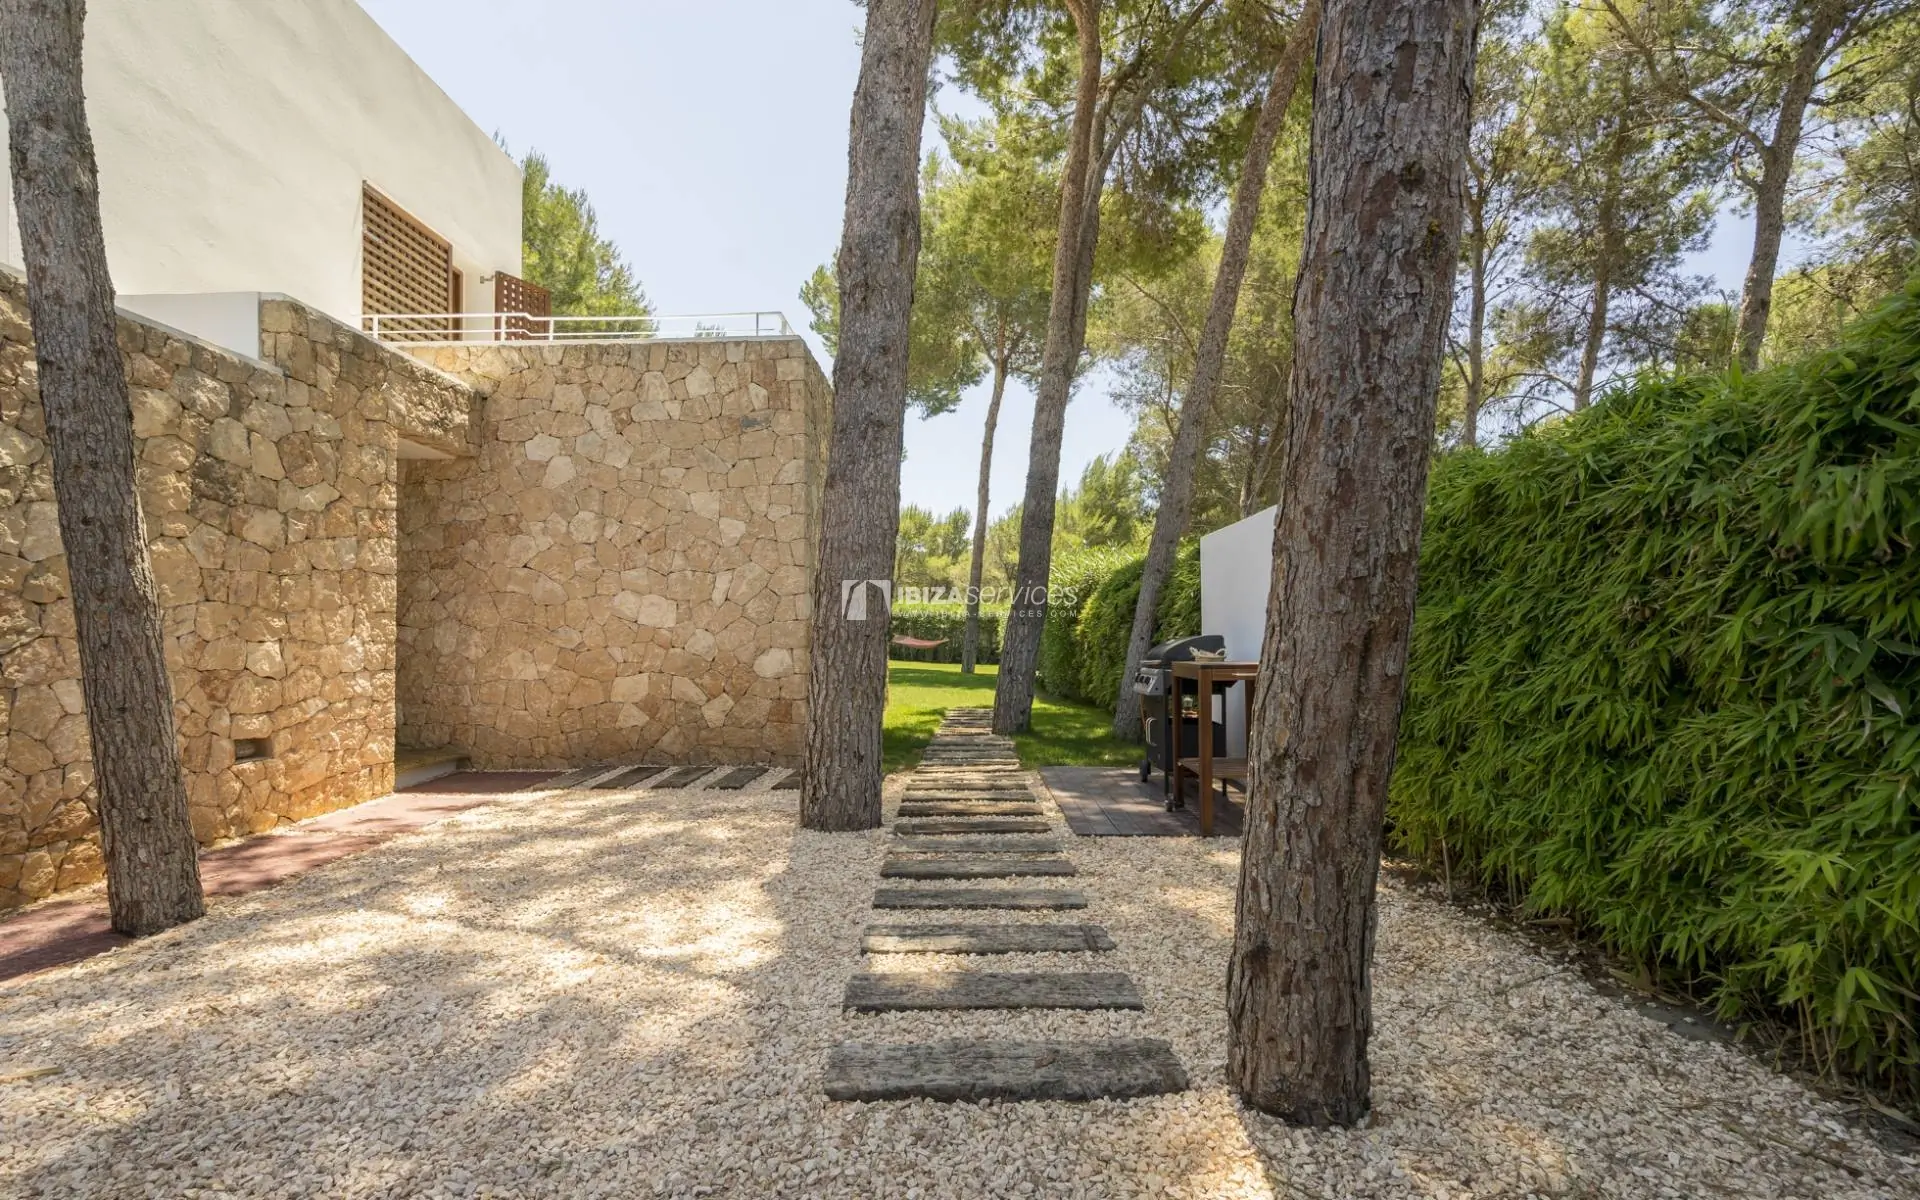 Eine Ferienvilla mit 4 Schlafzimmern in Andrea Can Furnet auf Ibiza